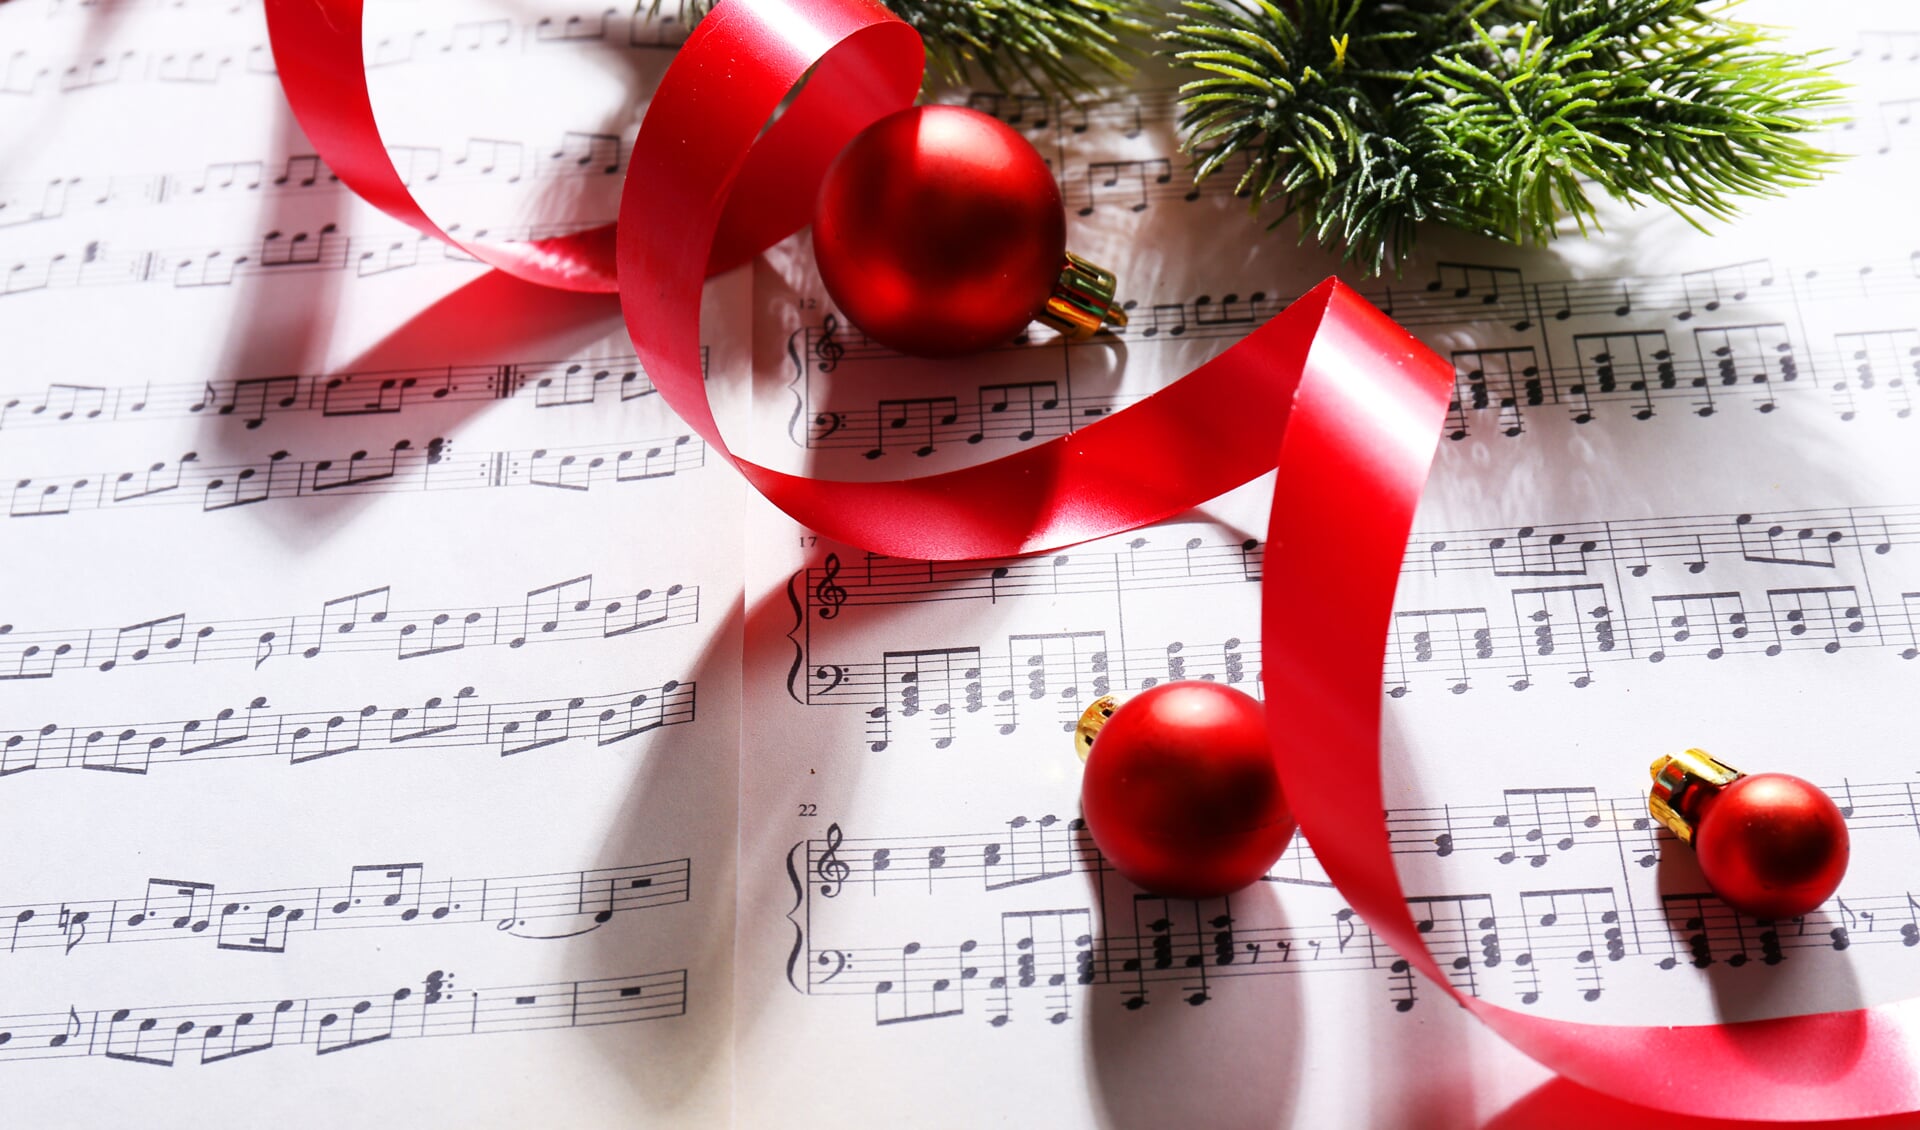 Het wordt een muzikale ochtend in gezellige kerstsfeer. (Foto: Shutterstock)